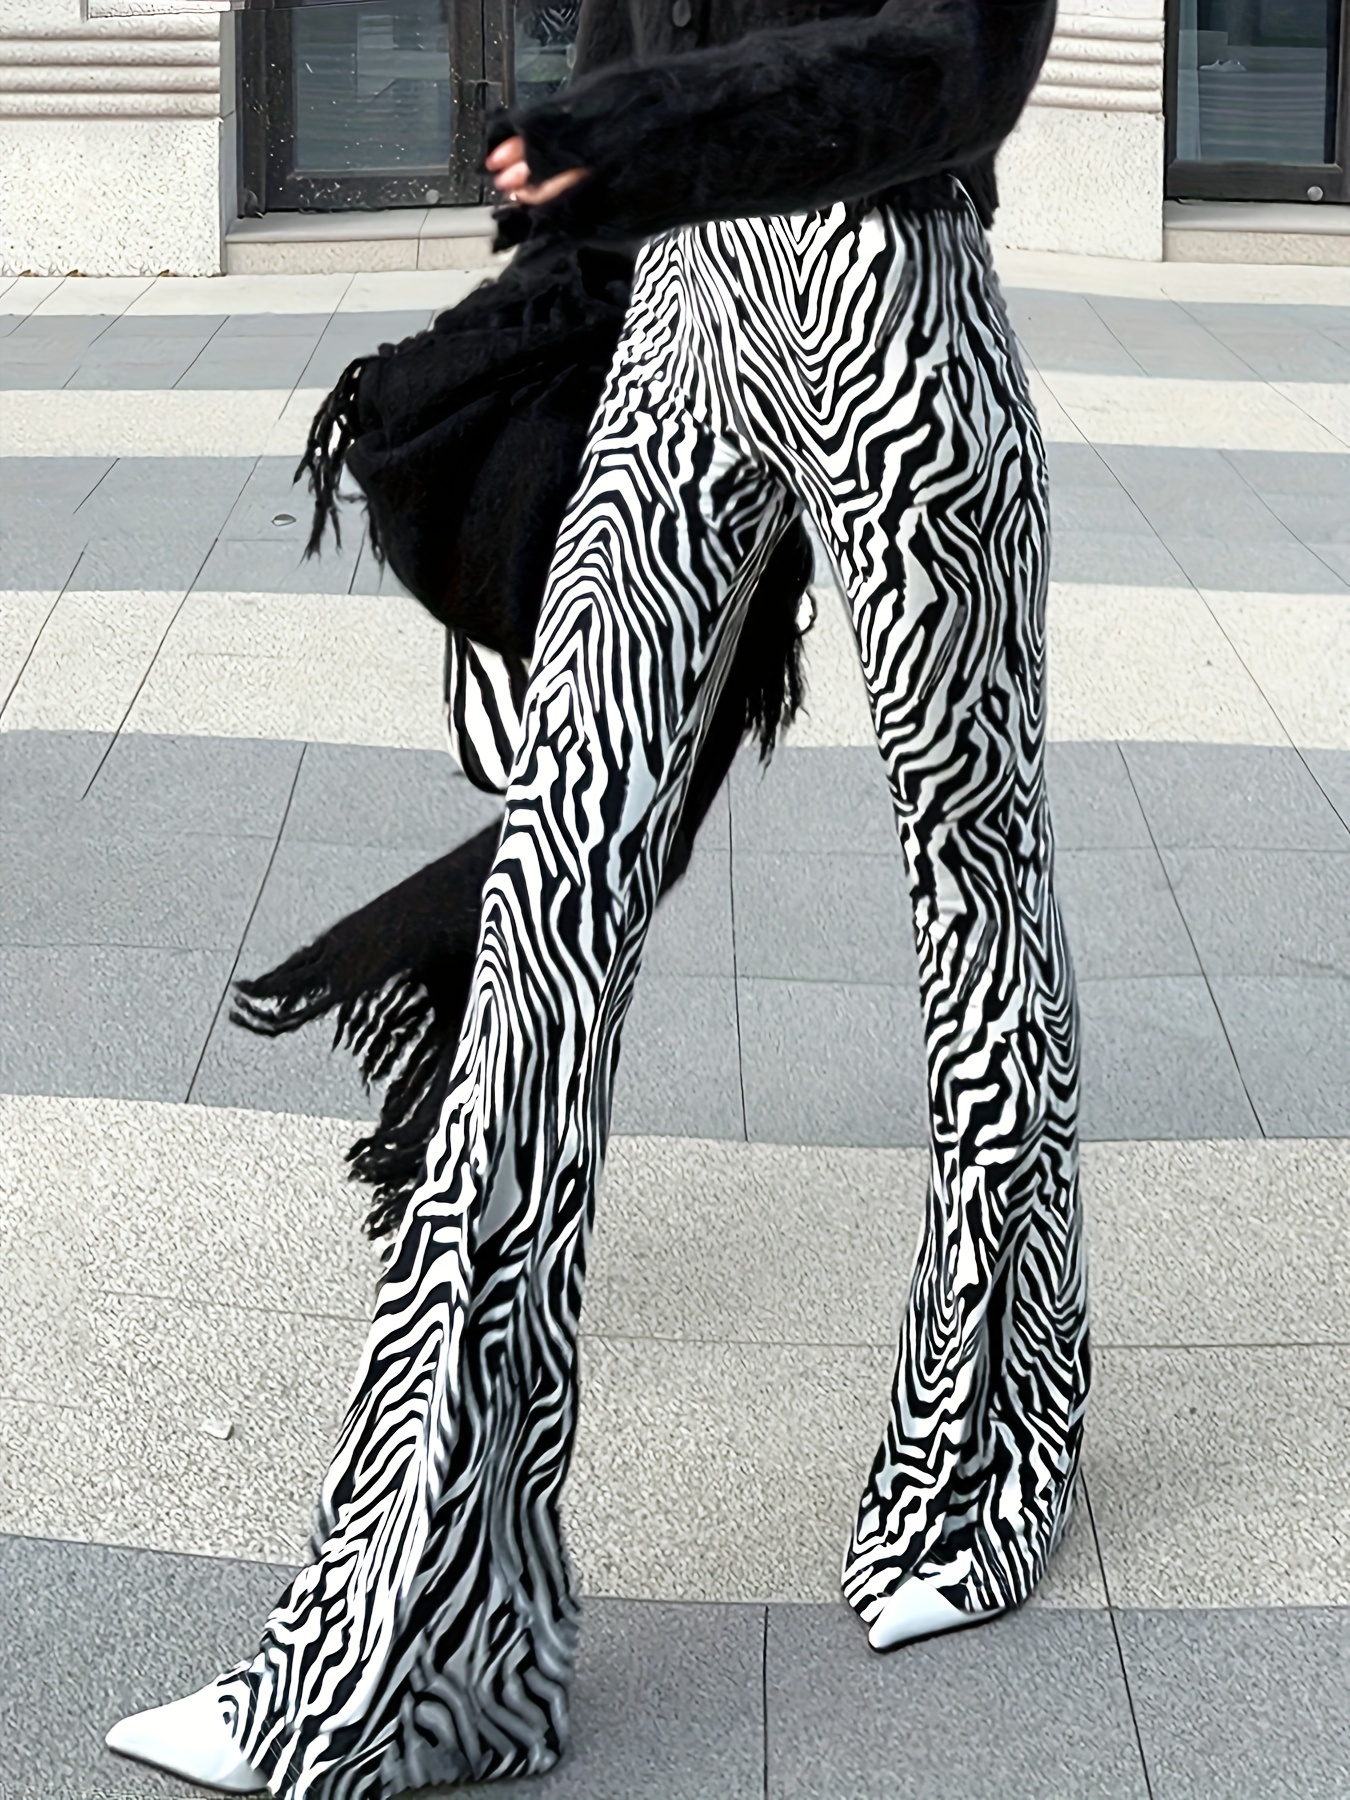 zebra leggings, animal print pants, casual street fashion  Zebra leggings,  Outfits with leggings, Printed leggings outfit